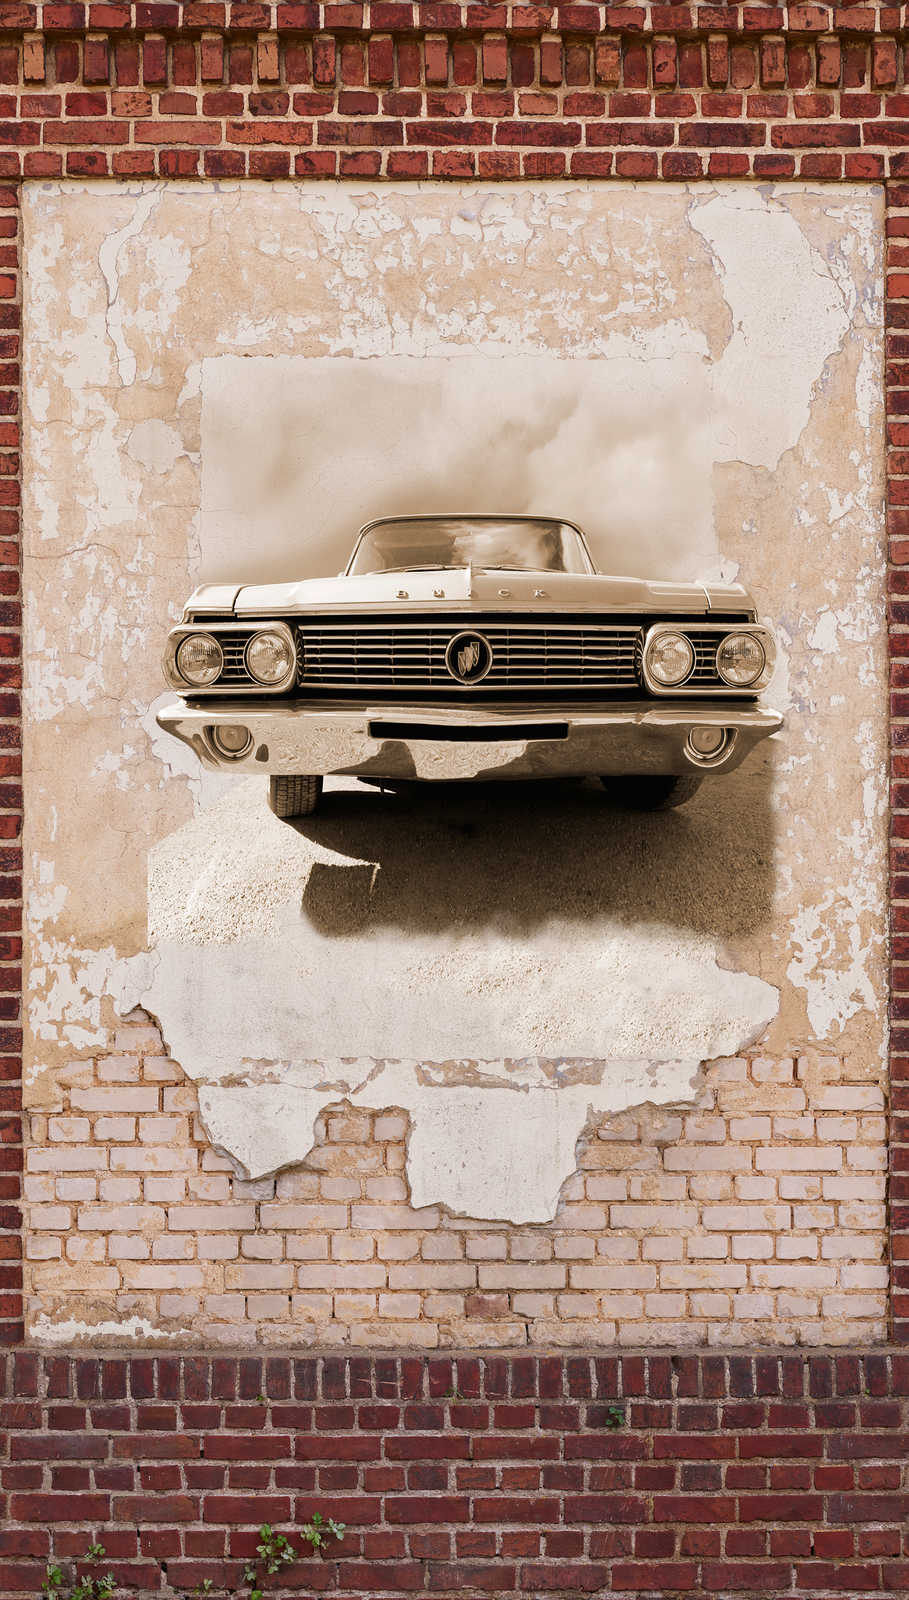             Steenachtig behang met automotief in vintage stijl - bruin, beige, rood
        